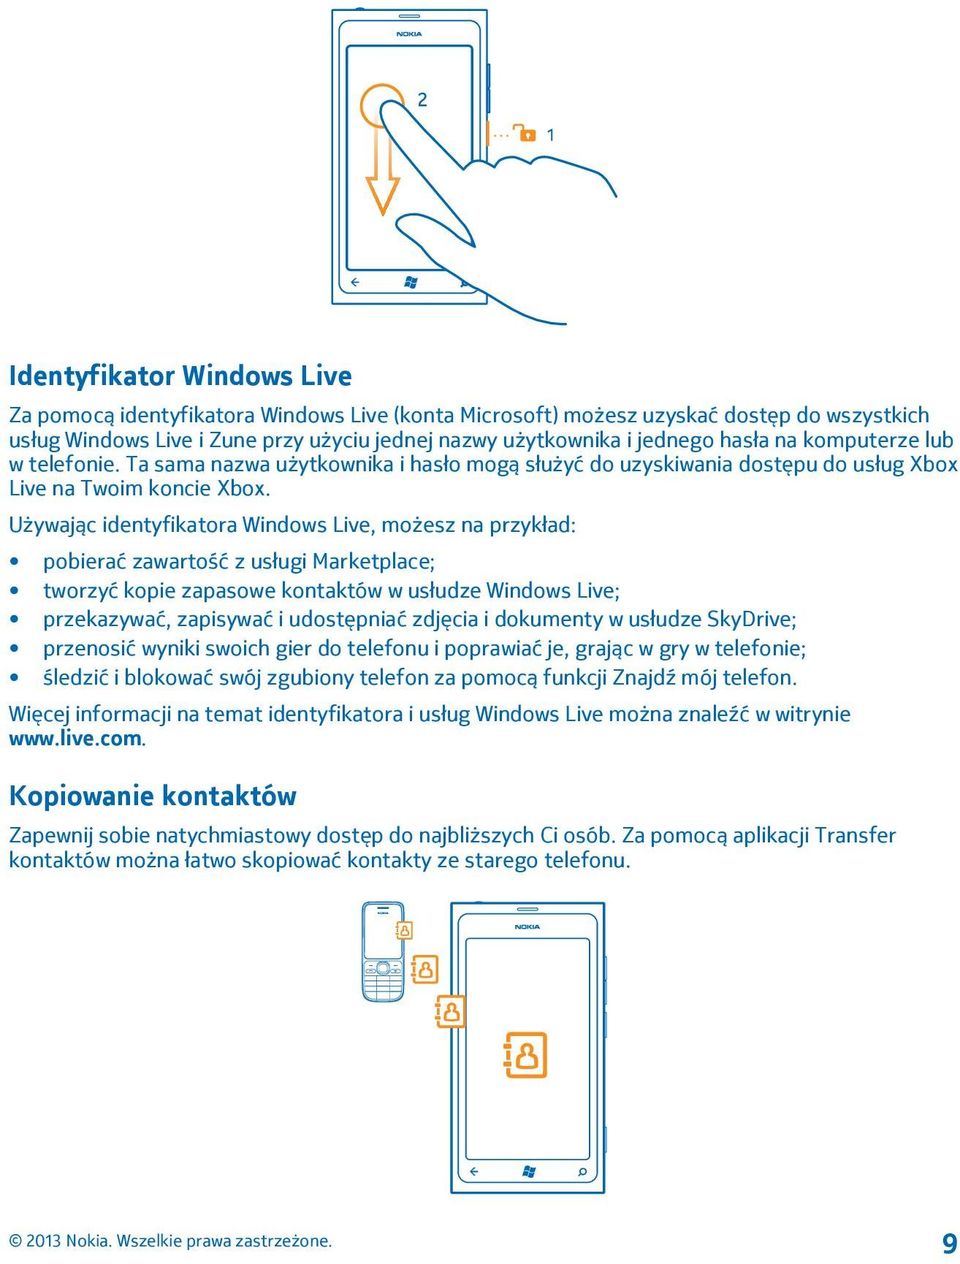 Używając identyfikatora Windows Live, możesz na przykład: pobierać zawartość z usługi Marketplace; tworzyć kopie zapasowe kontaktów w usłudze Windows Live; przekazywać, zapisywać i udostępniać